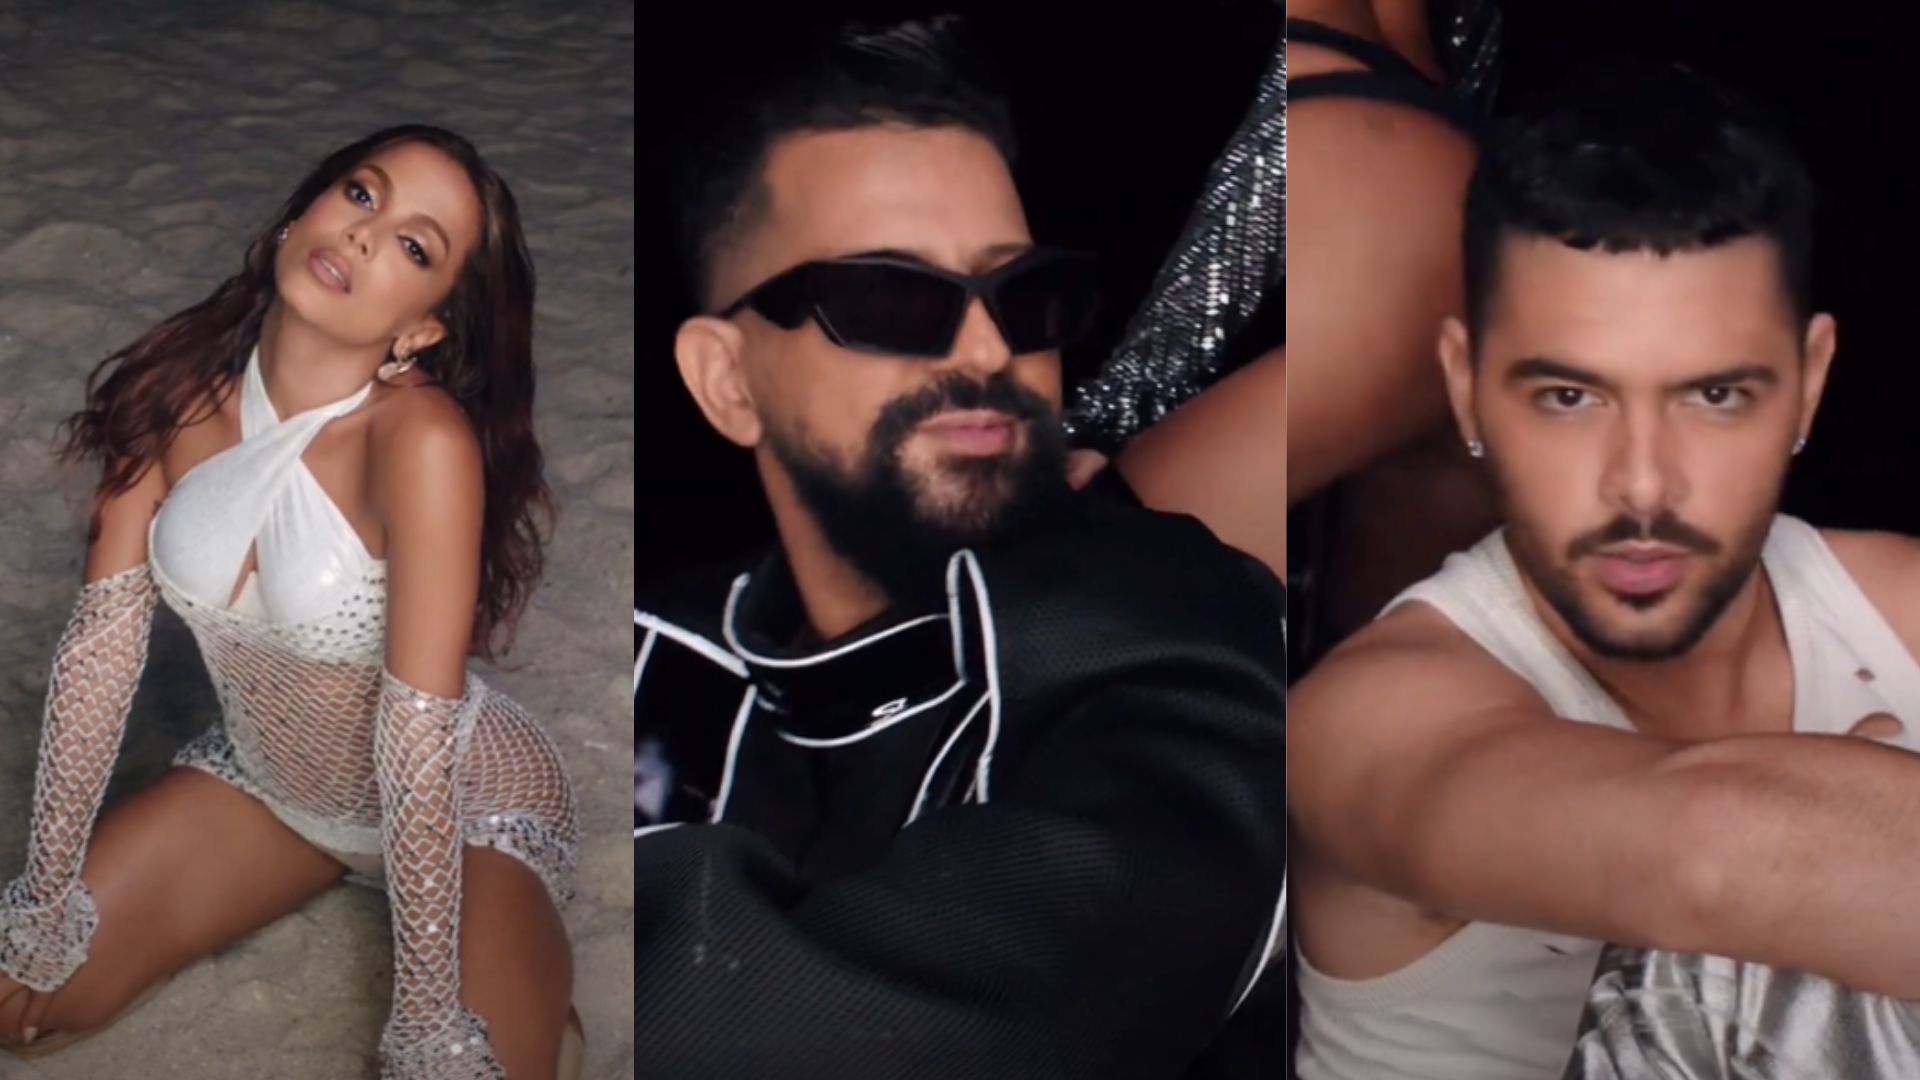 SAIU! Anitta divulga a sensual e dançante “Joga Pra Lua”, parceria ótima com Dennis DJ e Pedro Sampaio; ouça!